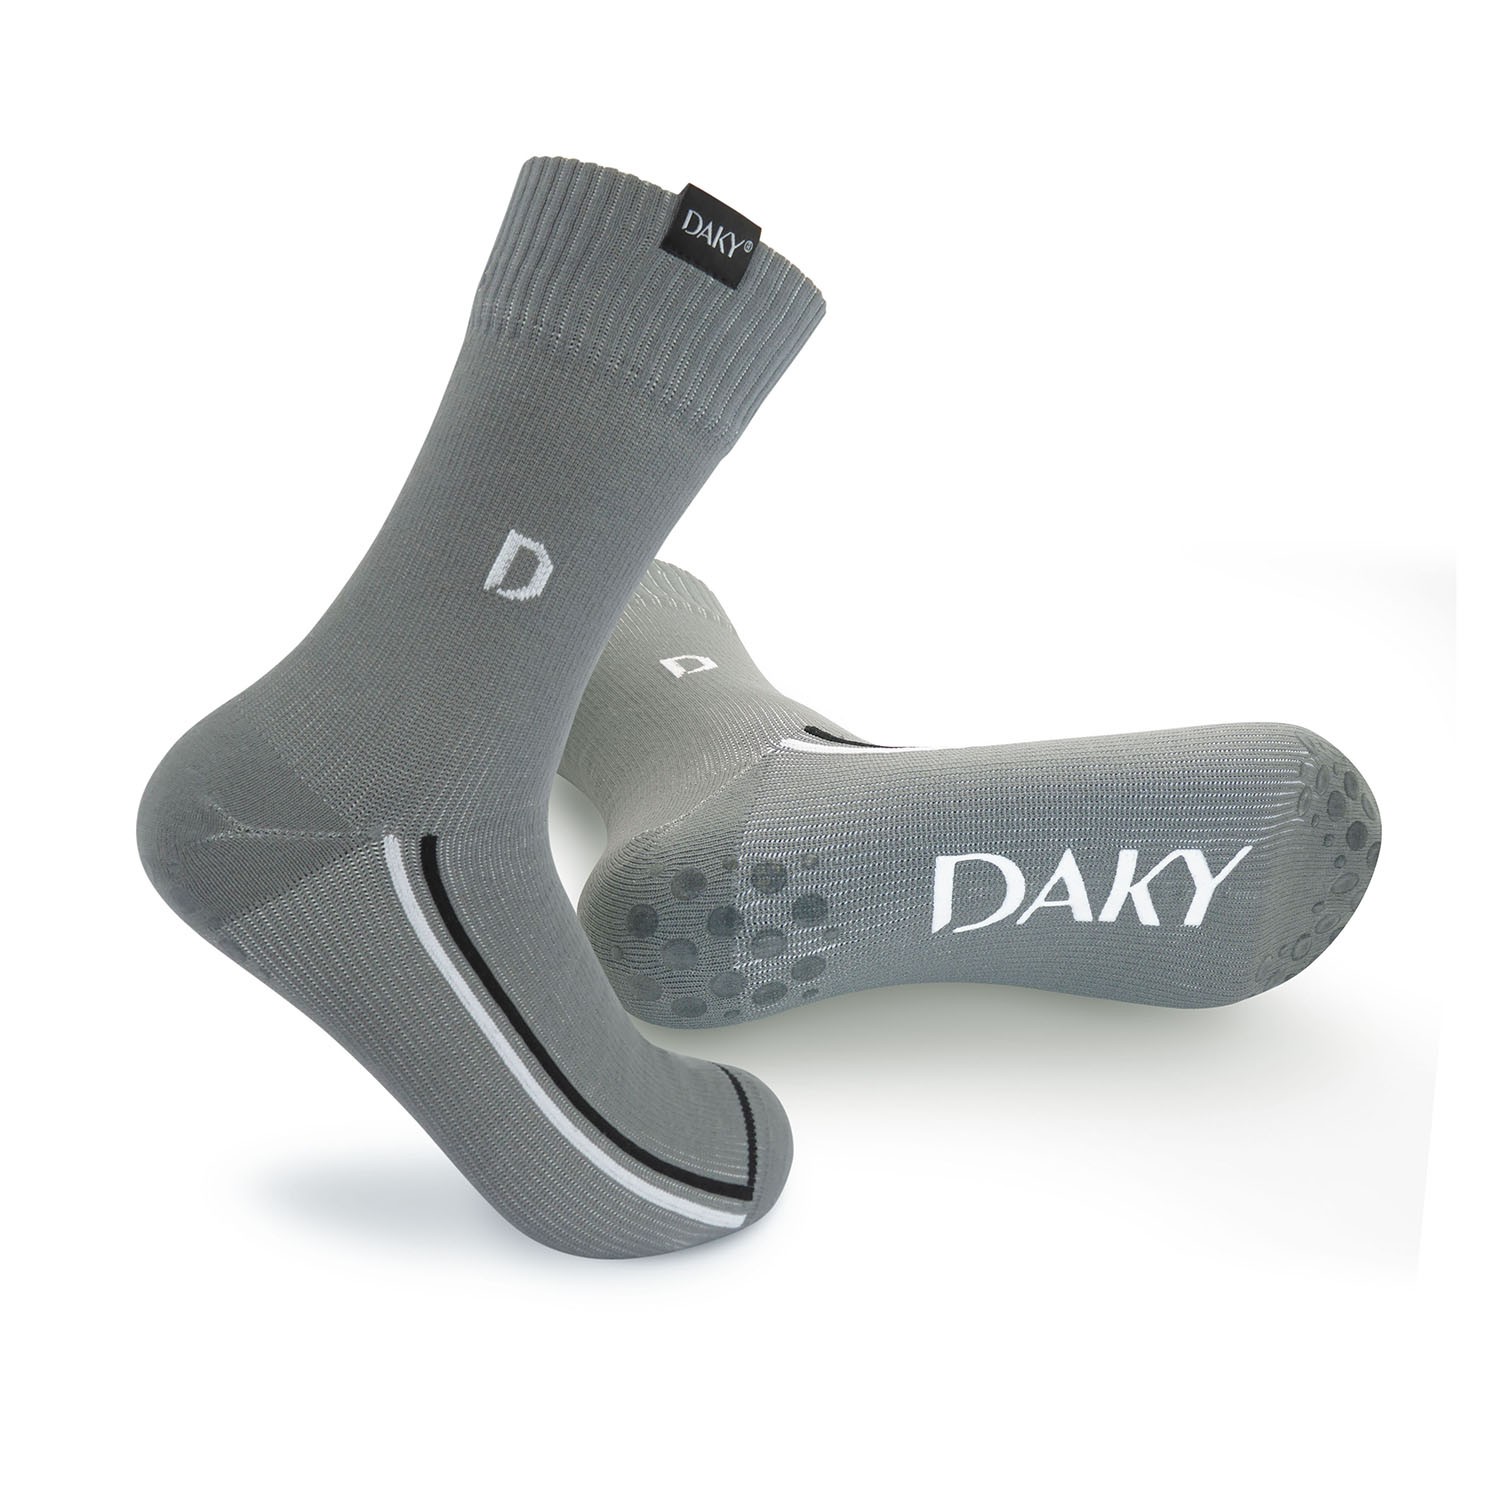 Compliant & Waterproof Socks SKYLINE Z Masah – WUDU DAKY 